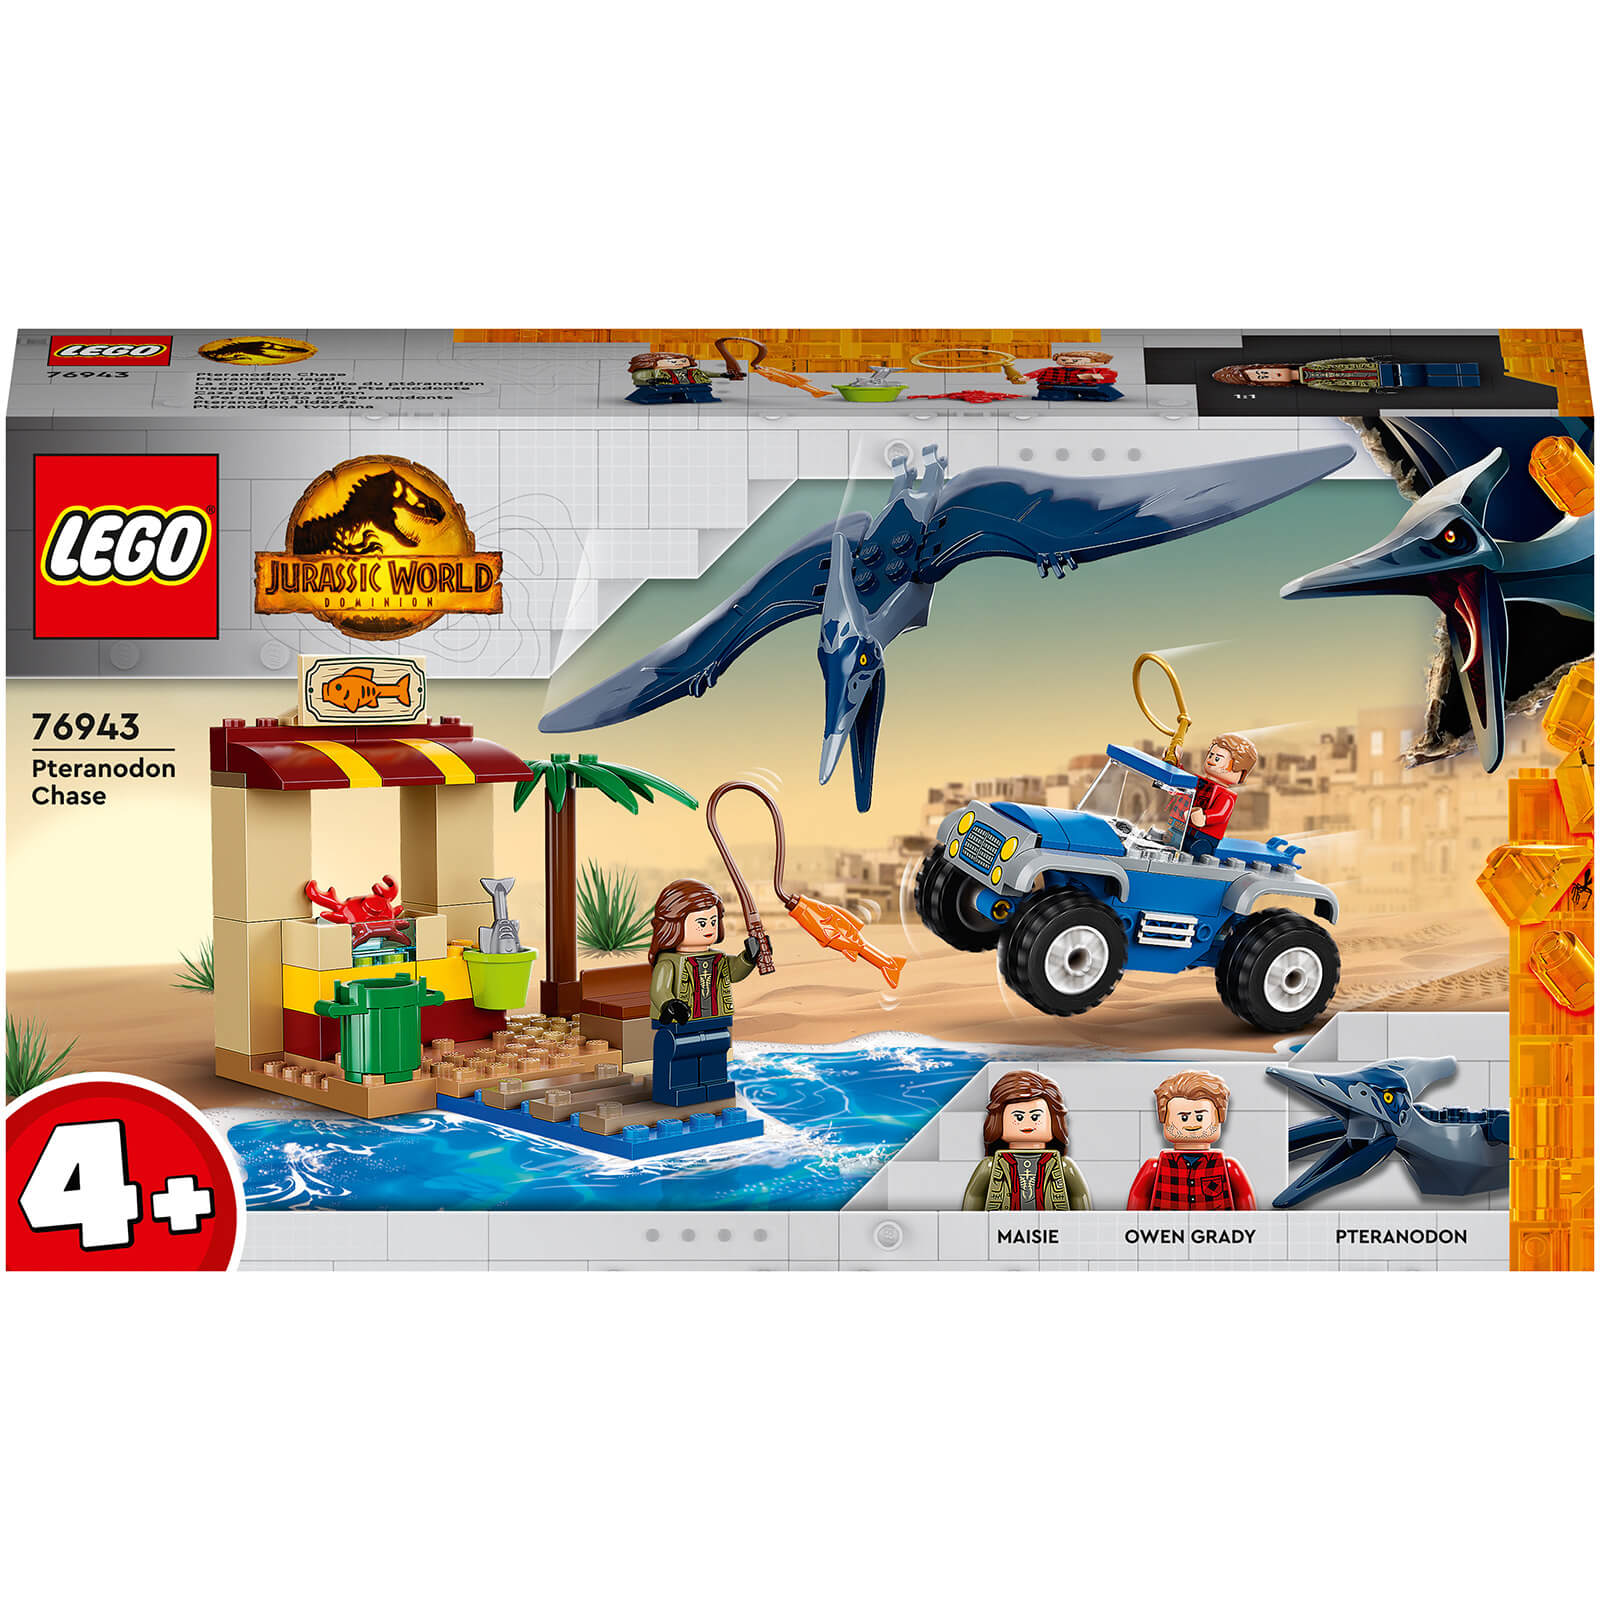 Image of LEGO Jurassic World: Pteranodon Chase Dinosaur Toy Playset (76943)